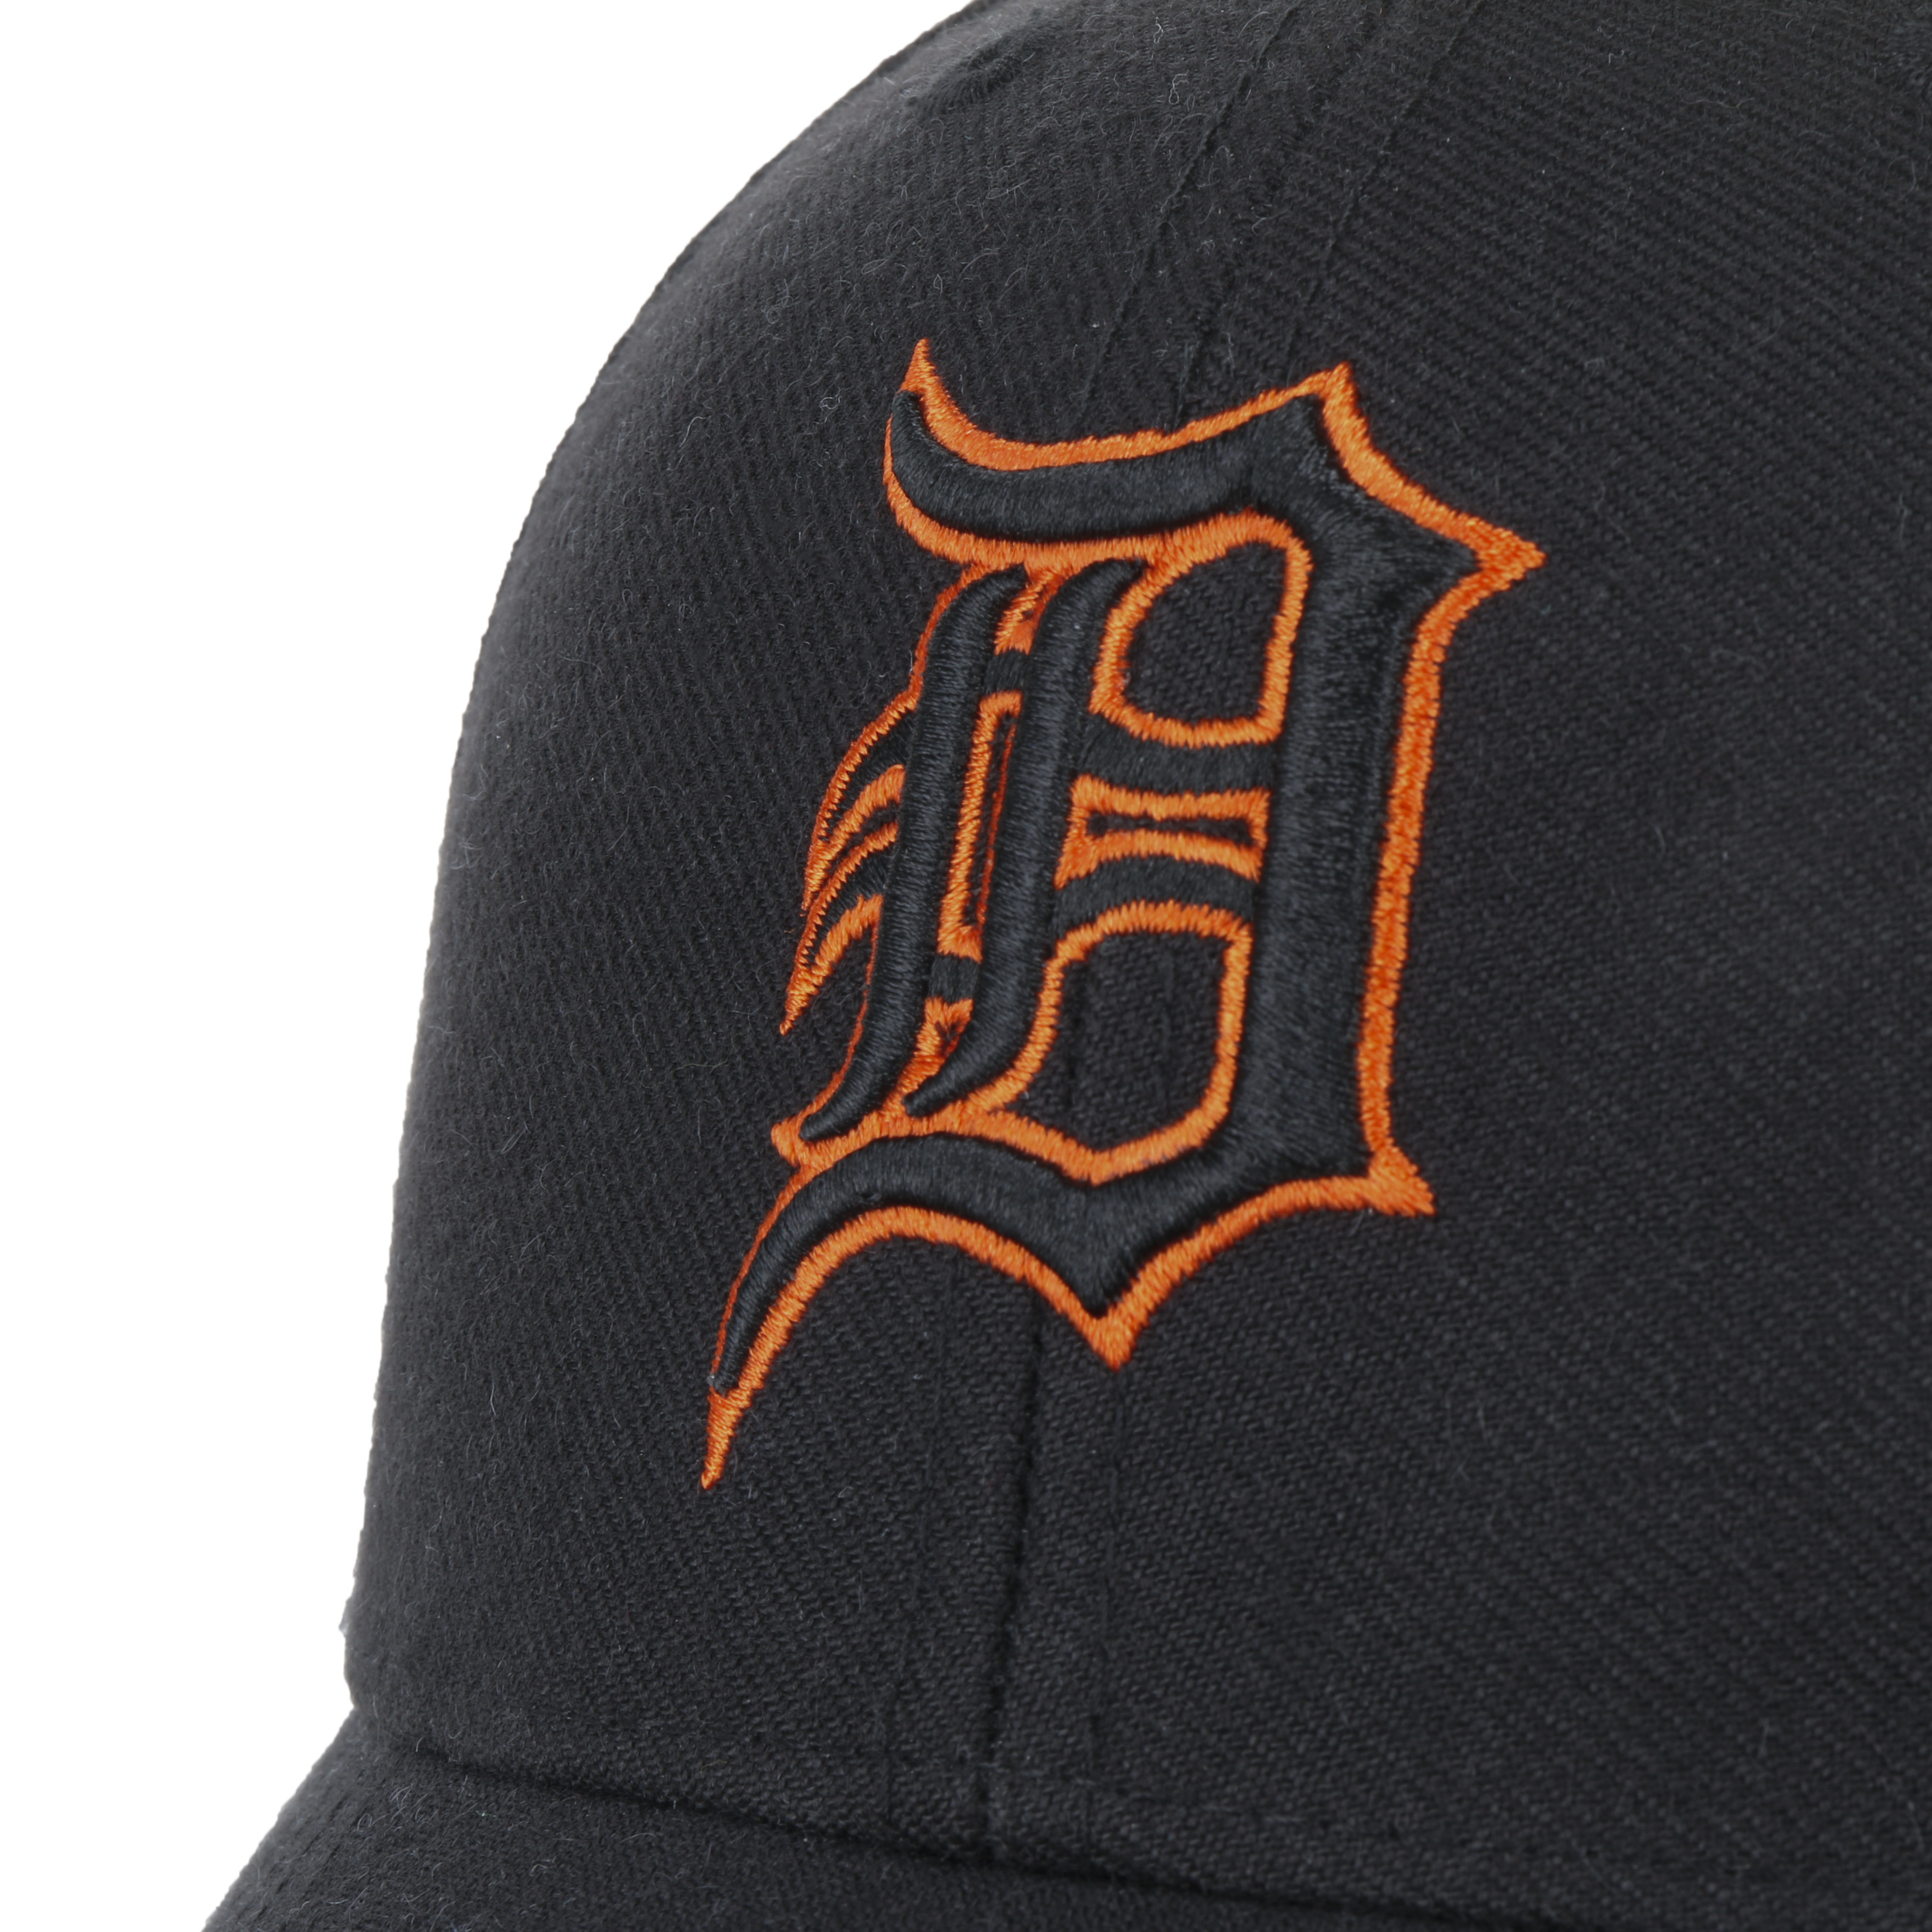 Detroit Tigers Hat Cap Adjustable Strap Back MLB Fan Favorite White Blue  Orange